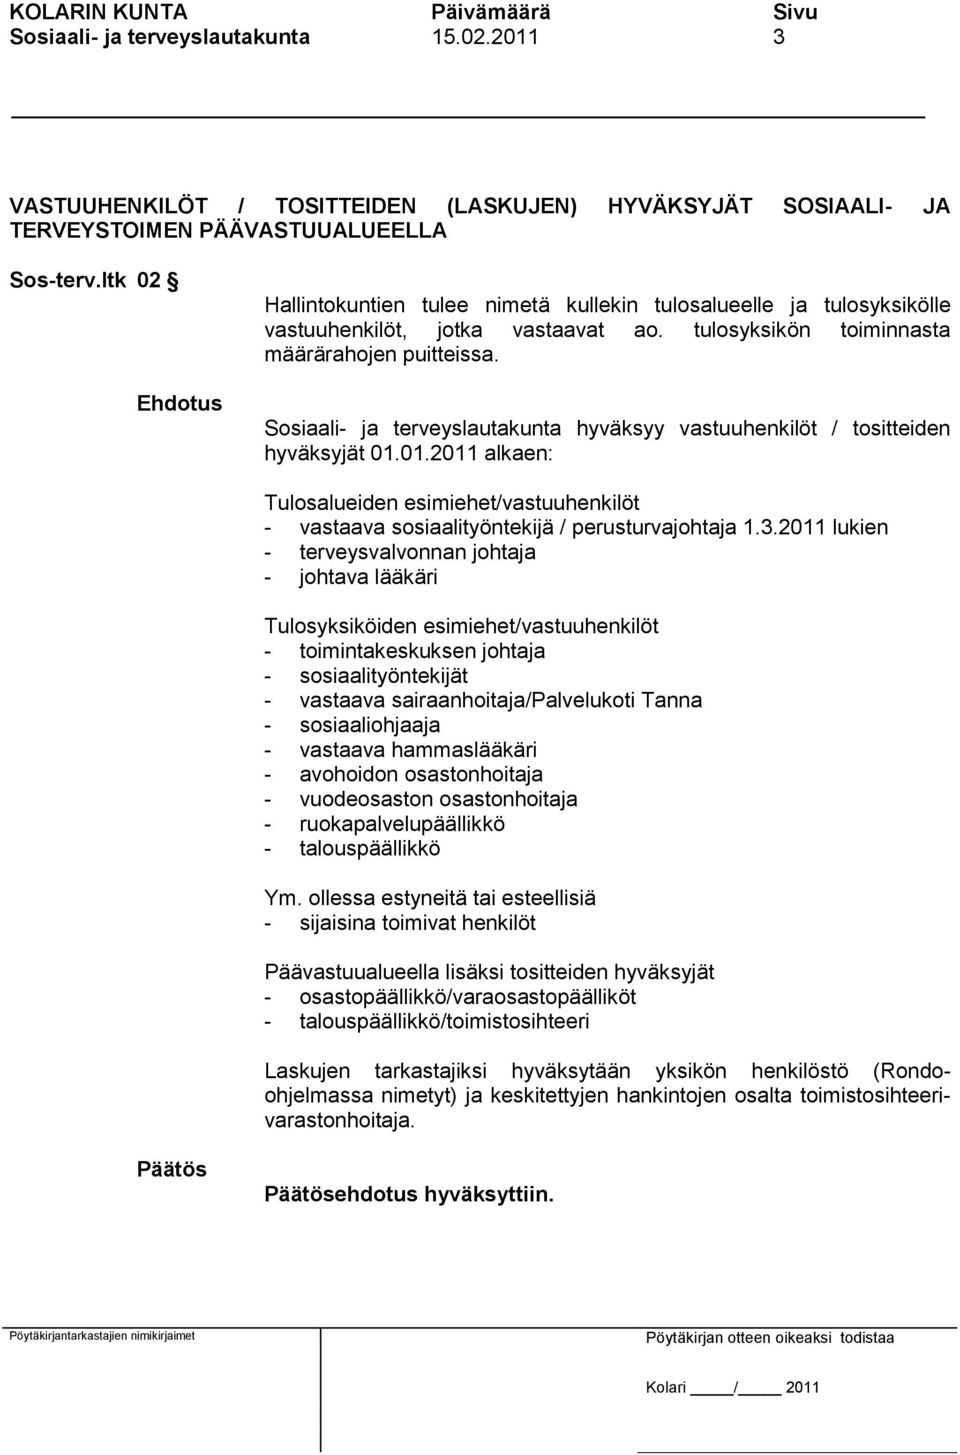 Sosiaali- ja terveyslautakunta hyväksyy vastuuhenkilöt / tositteiden hyväksyjät 01.01.2011 alkaen: Tulosalueiden esimiehet/vastuuhenkilöt - vastaava sosiaalityöntekijä / perusturvajohtaja 1.3.